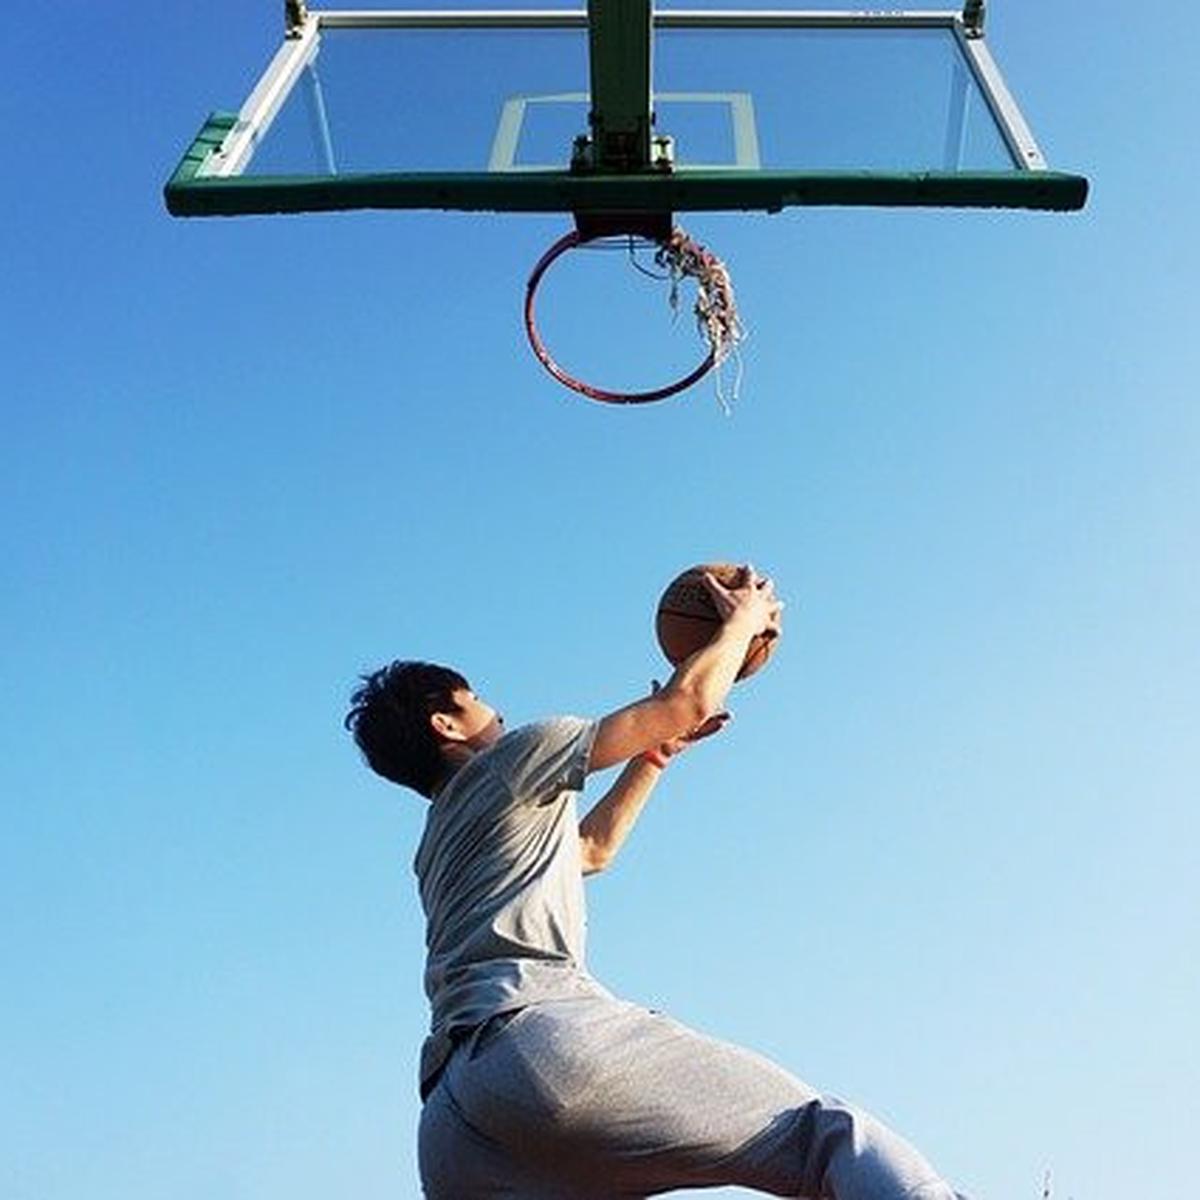 Permainan basket sambil menembak meloncat dapat dengan dalam bola dilakukan Ketentuan Pemberian